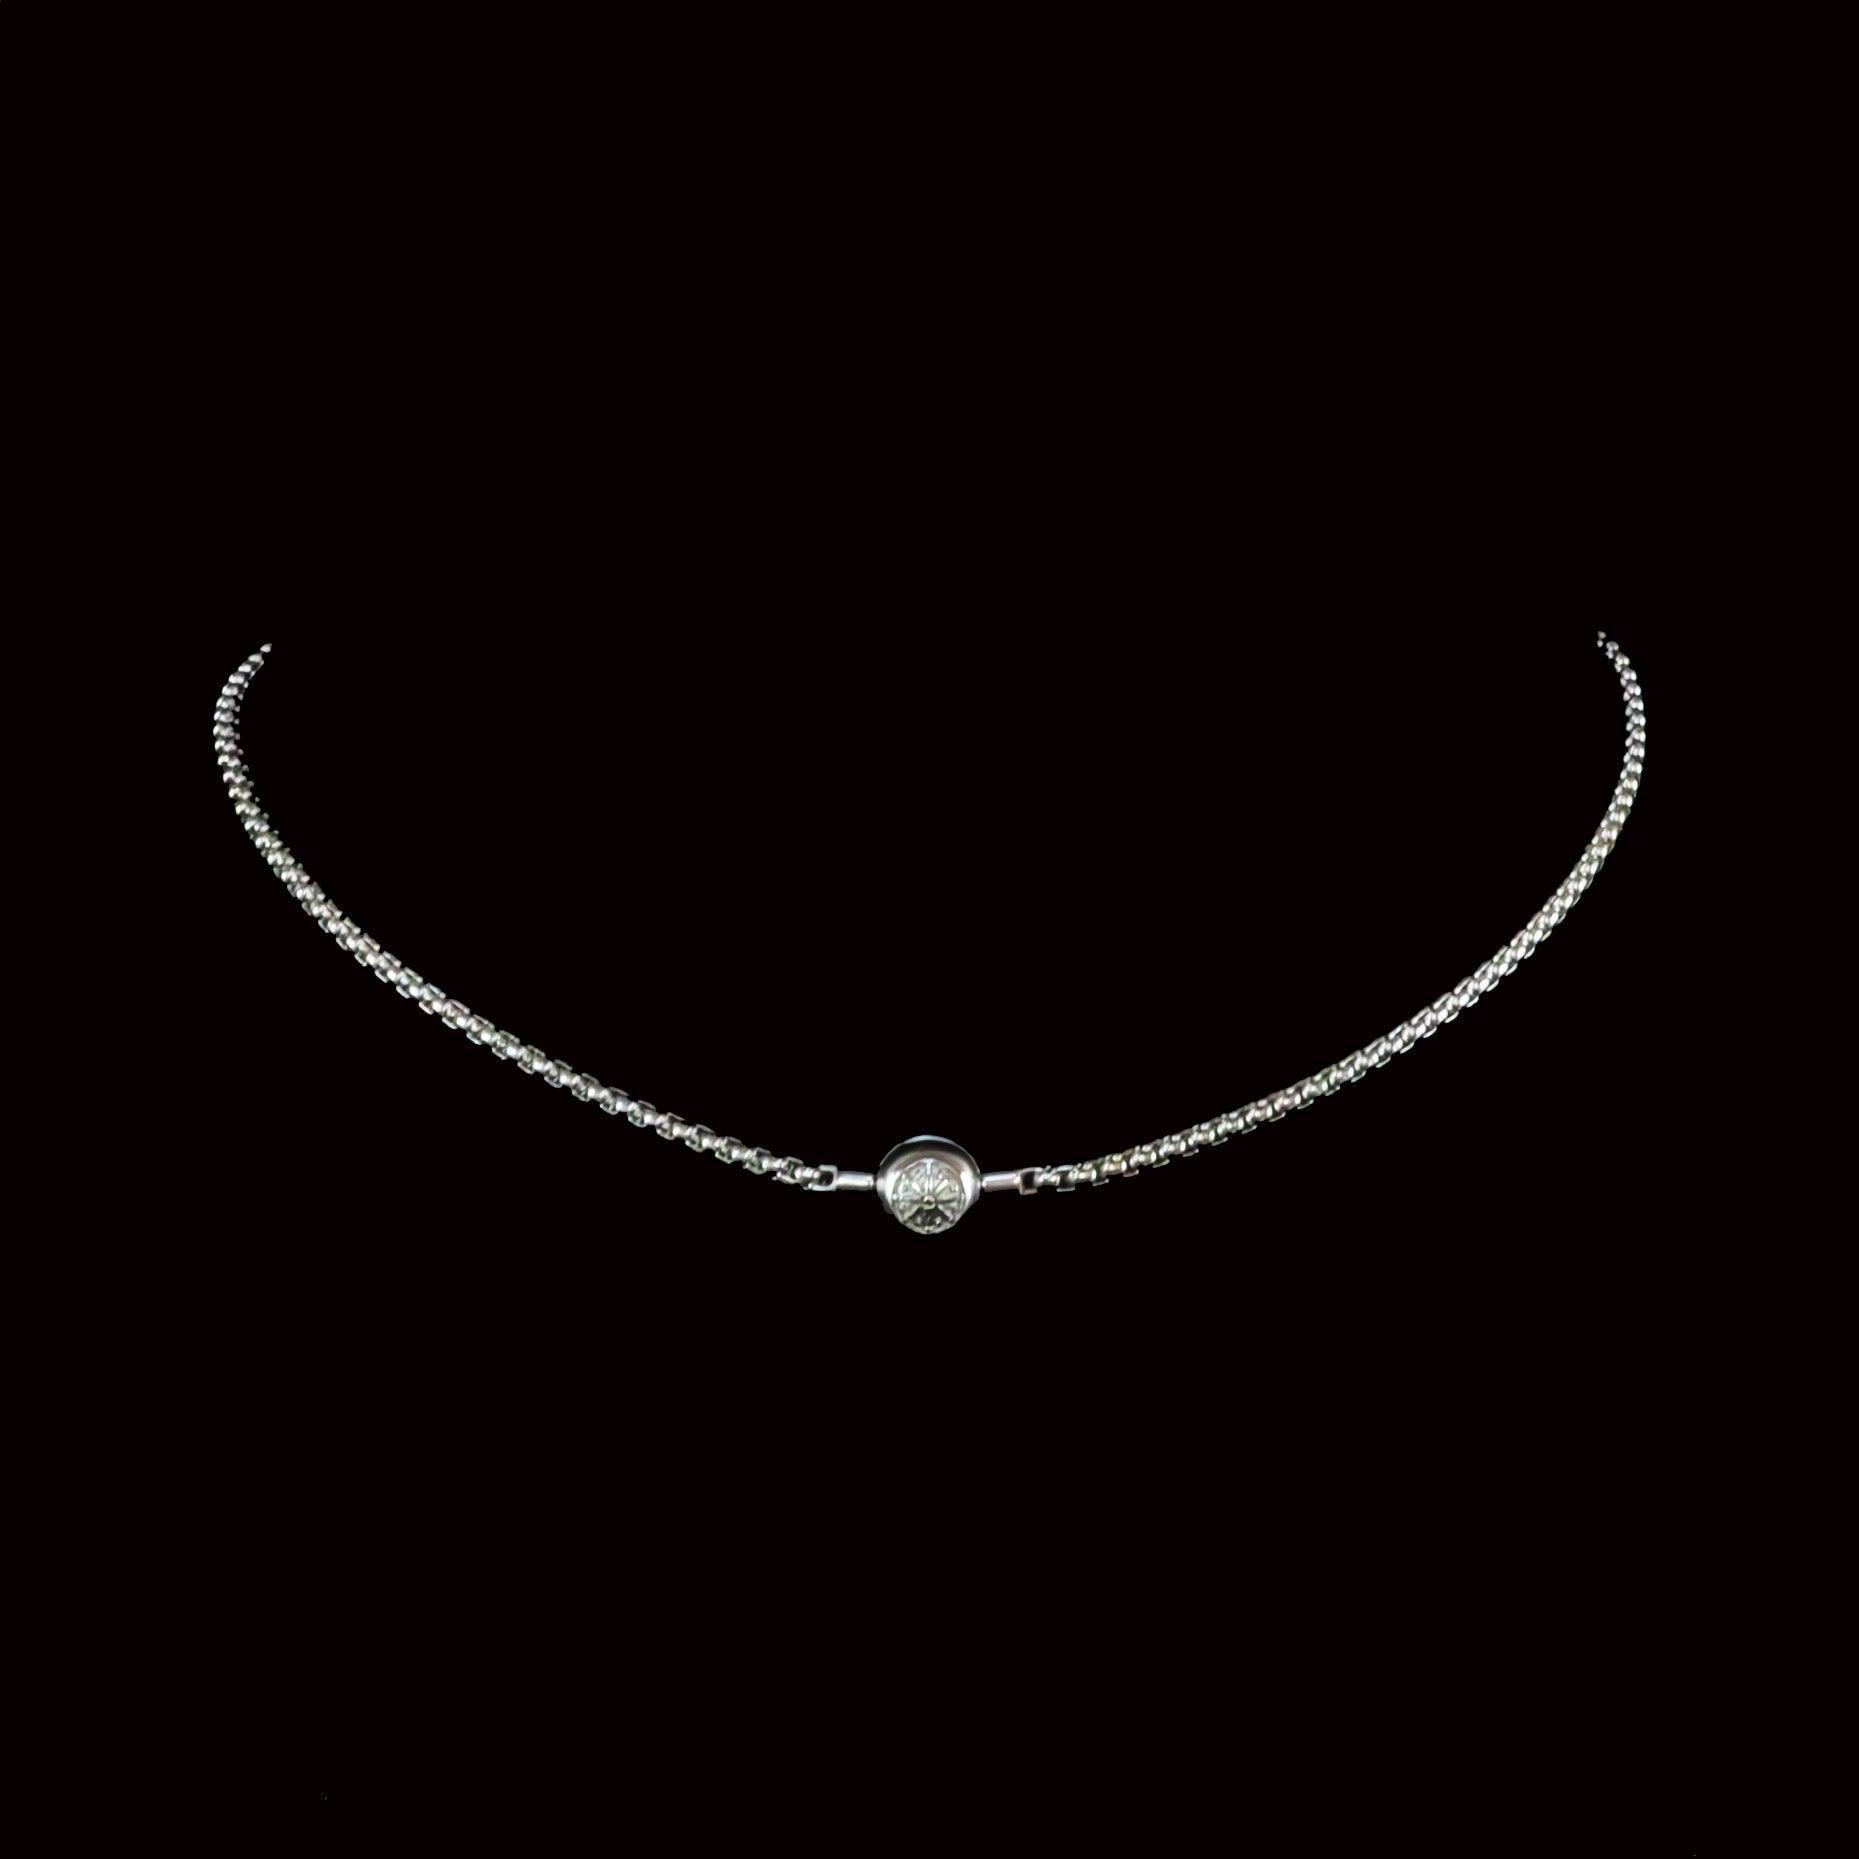 N061 colar básico de prata, nova corrente para joias da moda, estilo europeu, bijuteria rebelde, presente para homens e mulheres, amigo